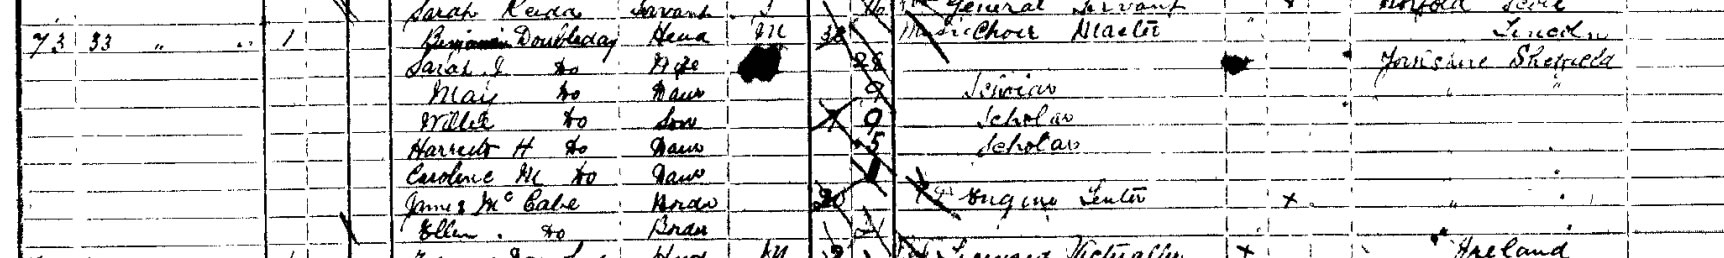 Benjamin & Sarah in the 1891 Census